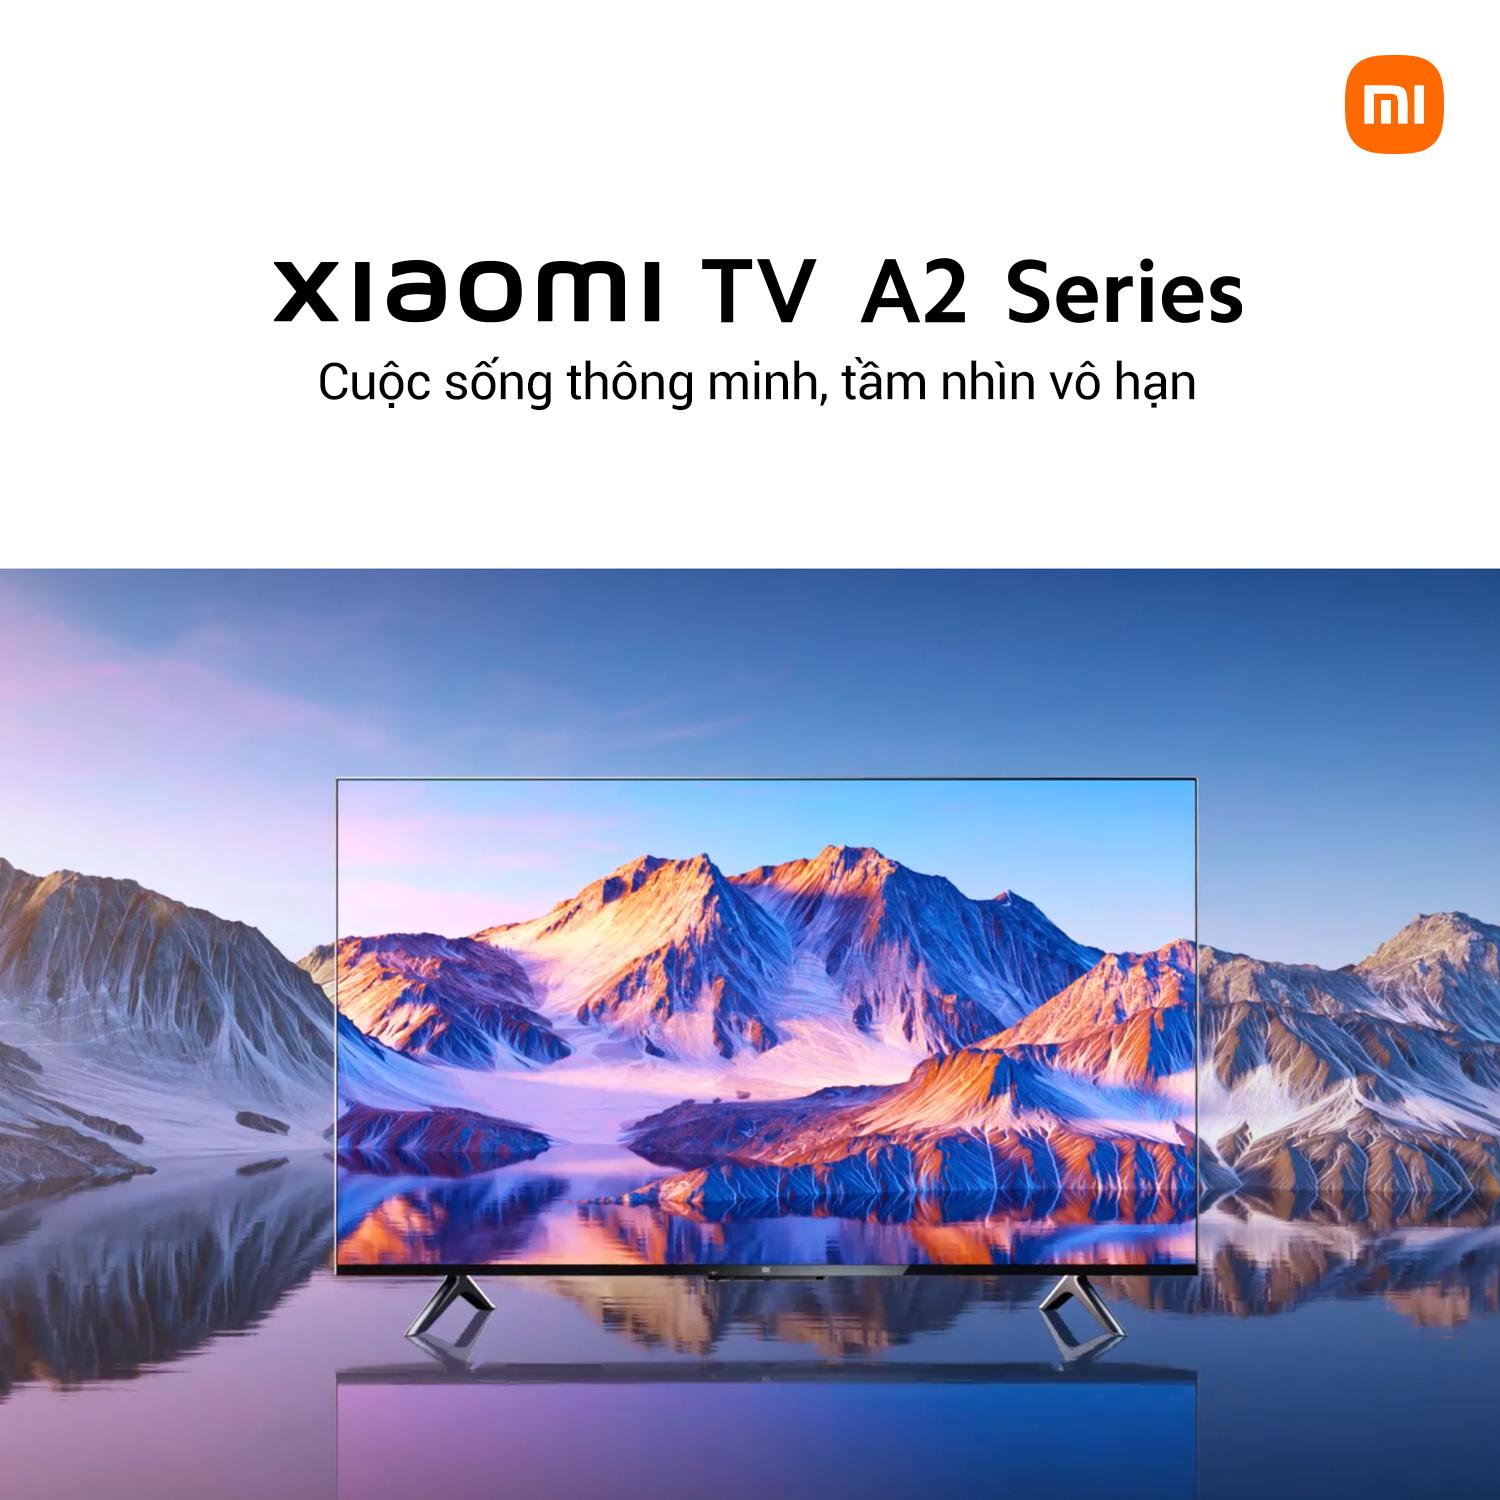 Xiaomi TV A2 43 inch và 32 inch ra mắt với ưu đãi giảm ngay 2 triệu đồng thỏa mãn nhu cầu giải trí của người dùng - Ảnh 1.